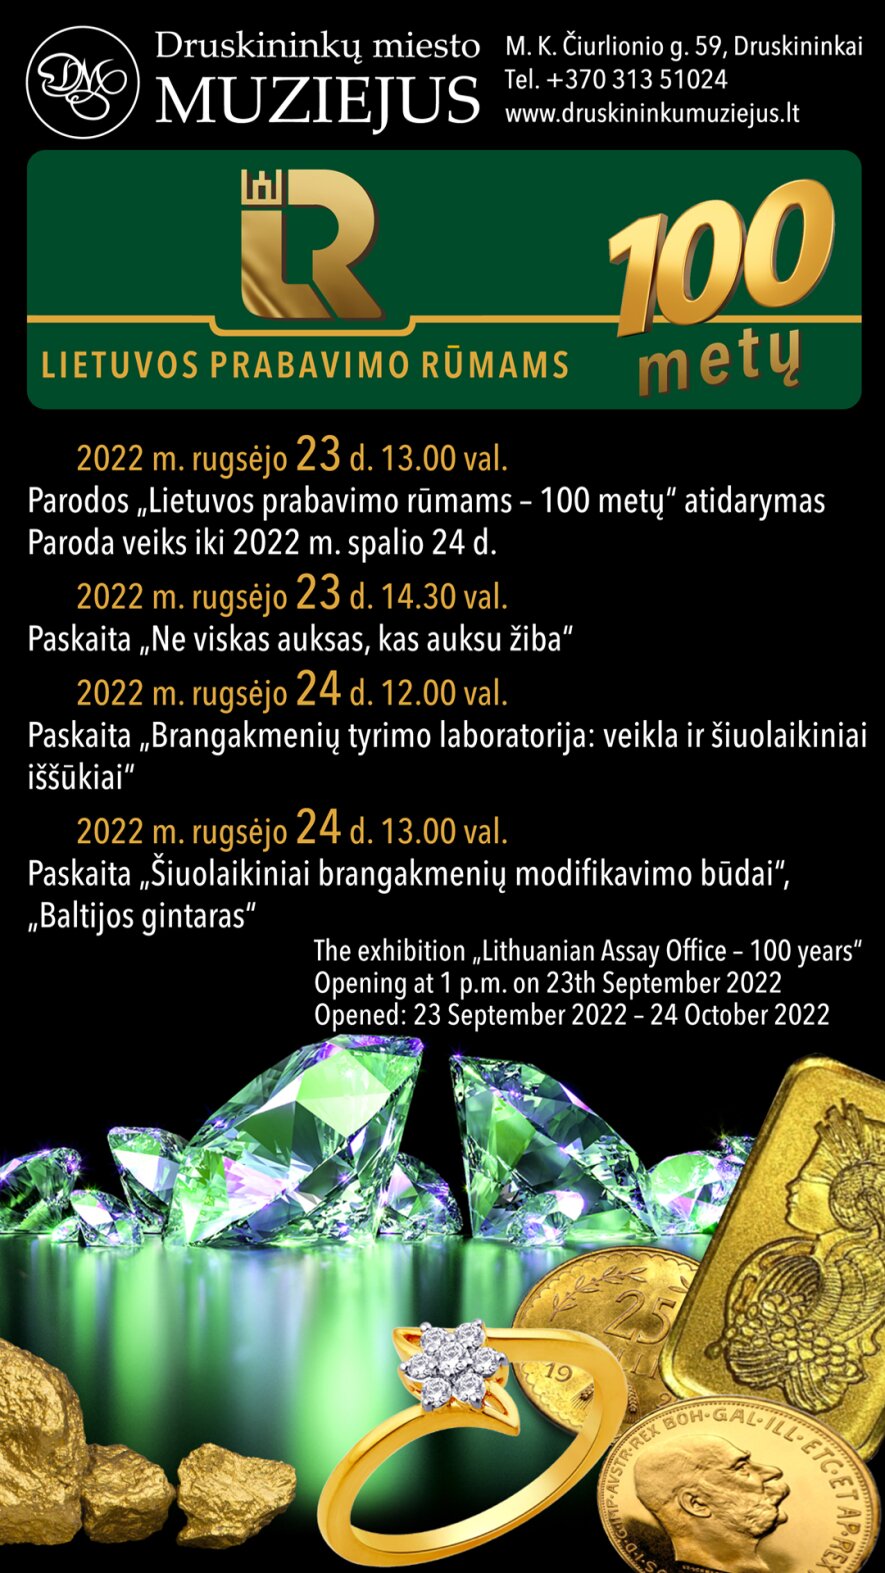 Lietuvos prabavimo rūmams - 100 metų